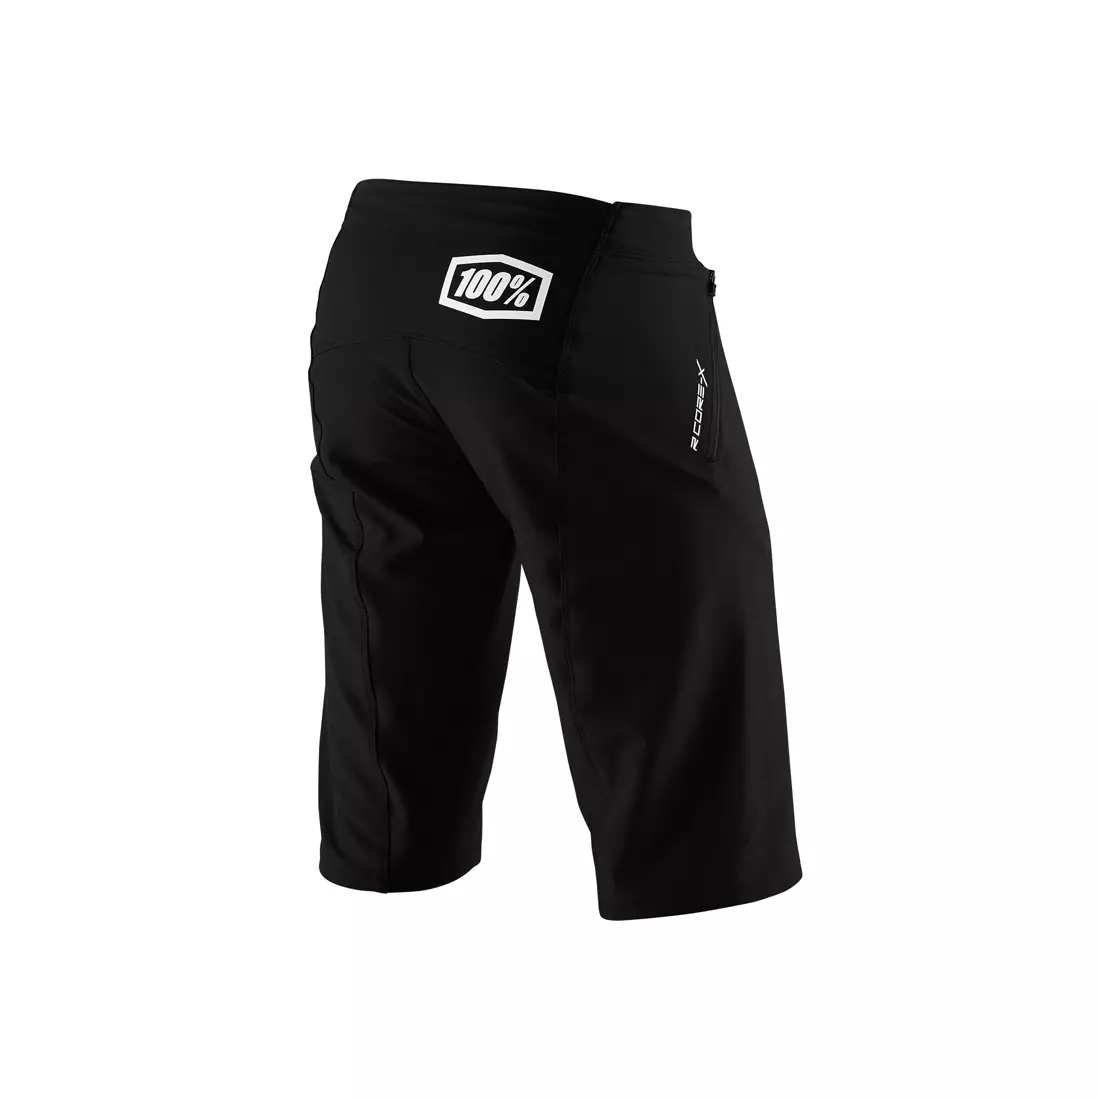 100% Pantaloni scurți de bărbați pentru ciclism r-core x negru STO-42002-001-38